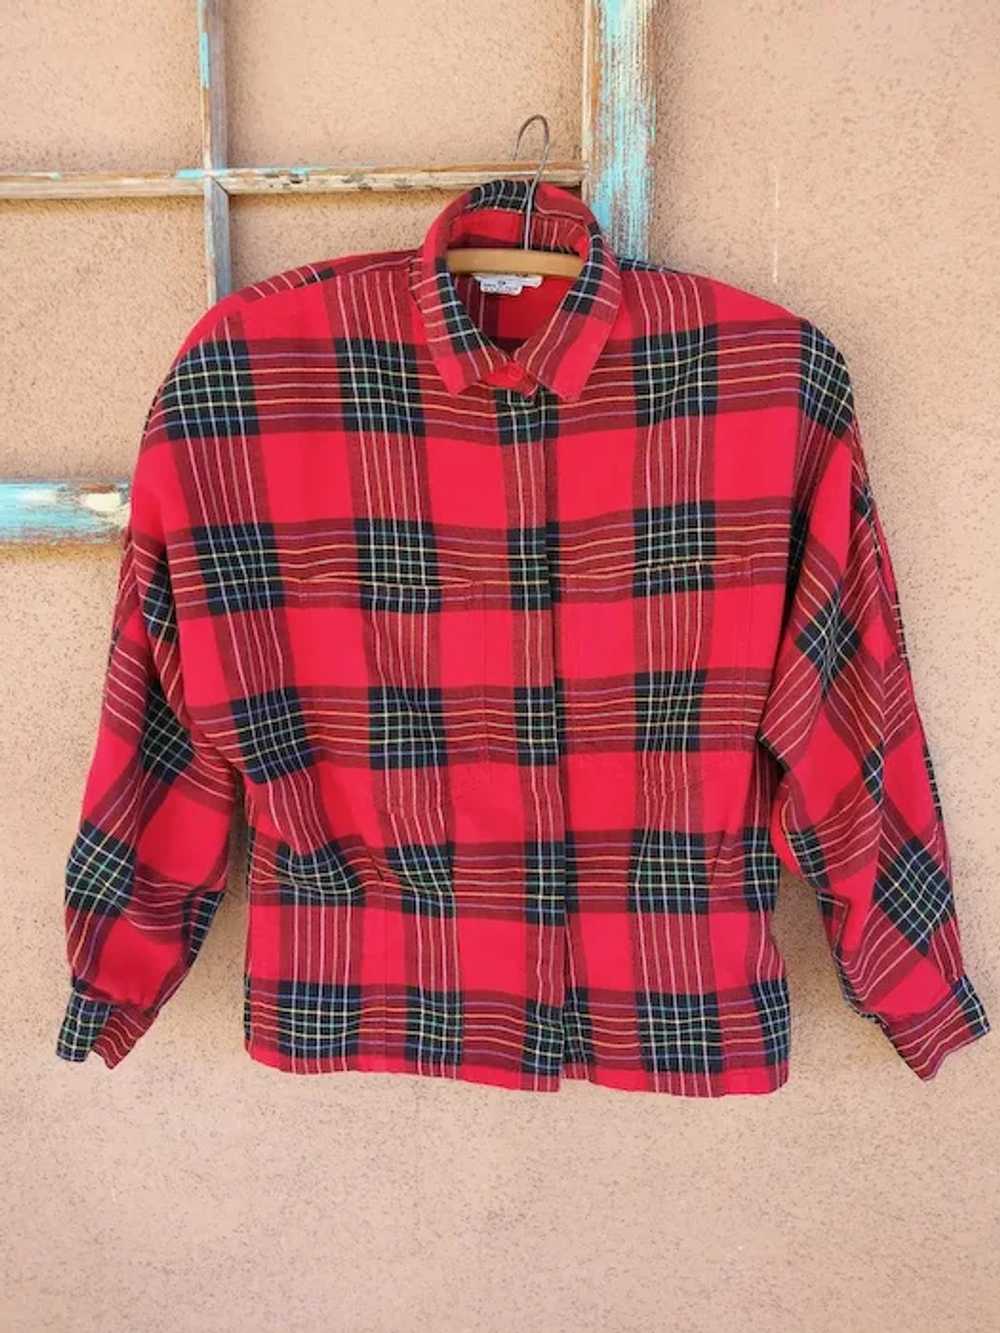 1980s Red Plaid Cotton Flannel Shirt Blouse Sz S M - image 6